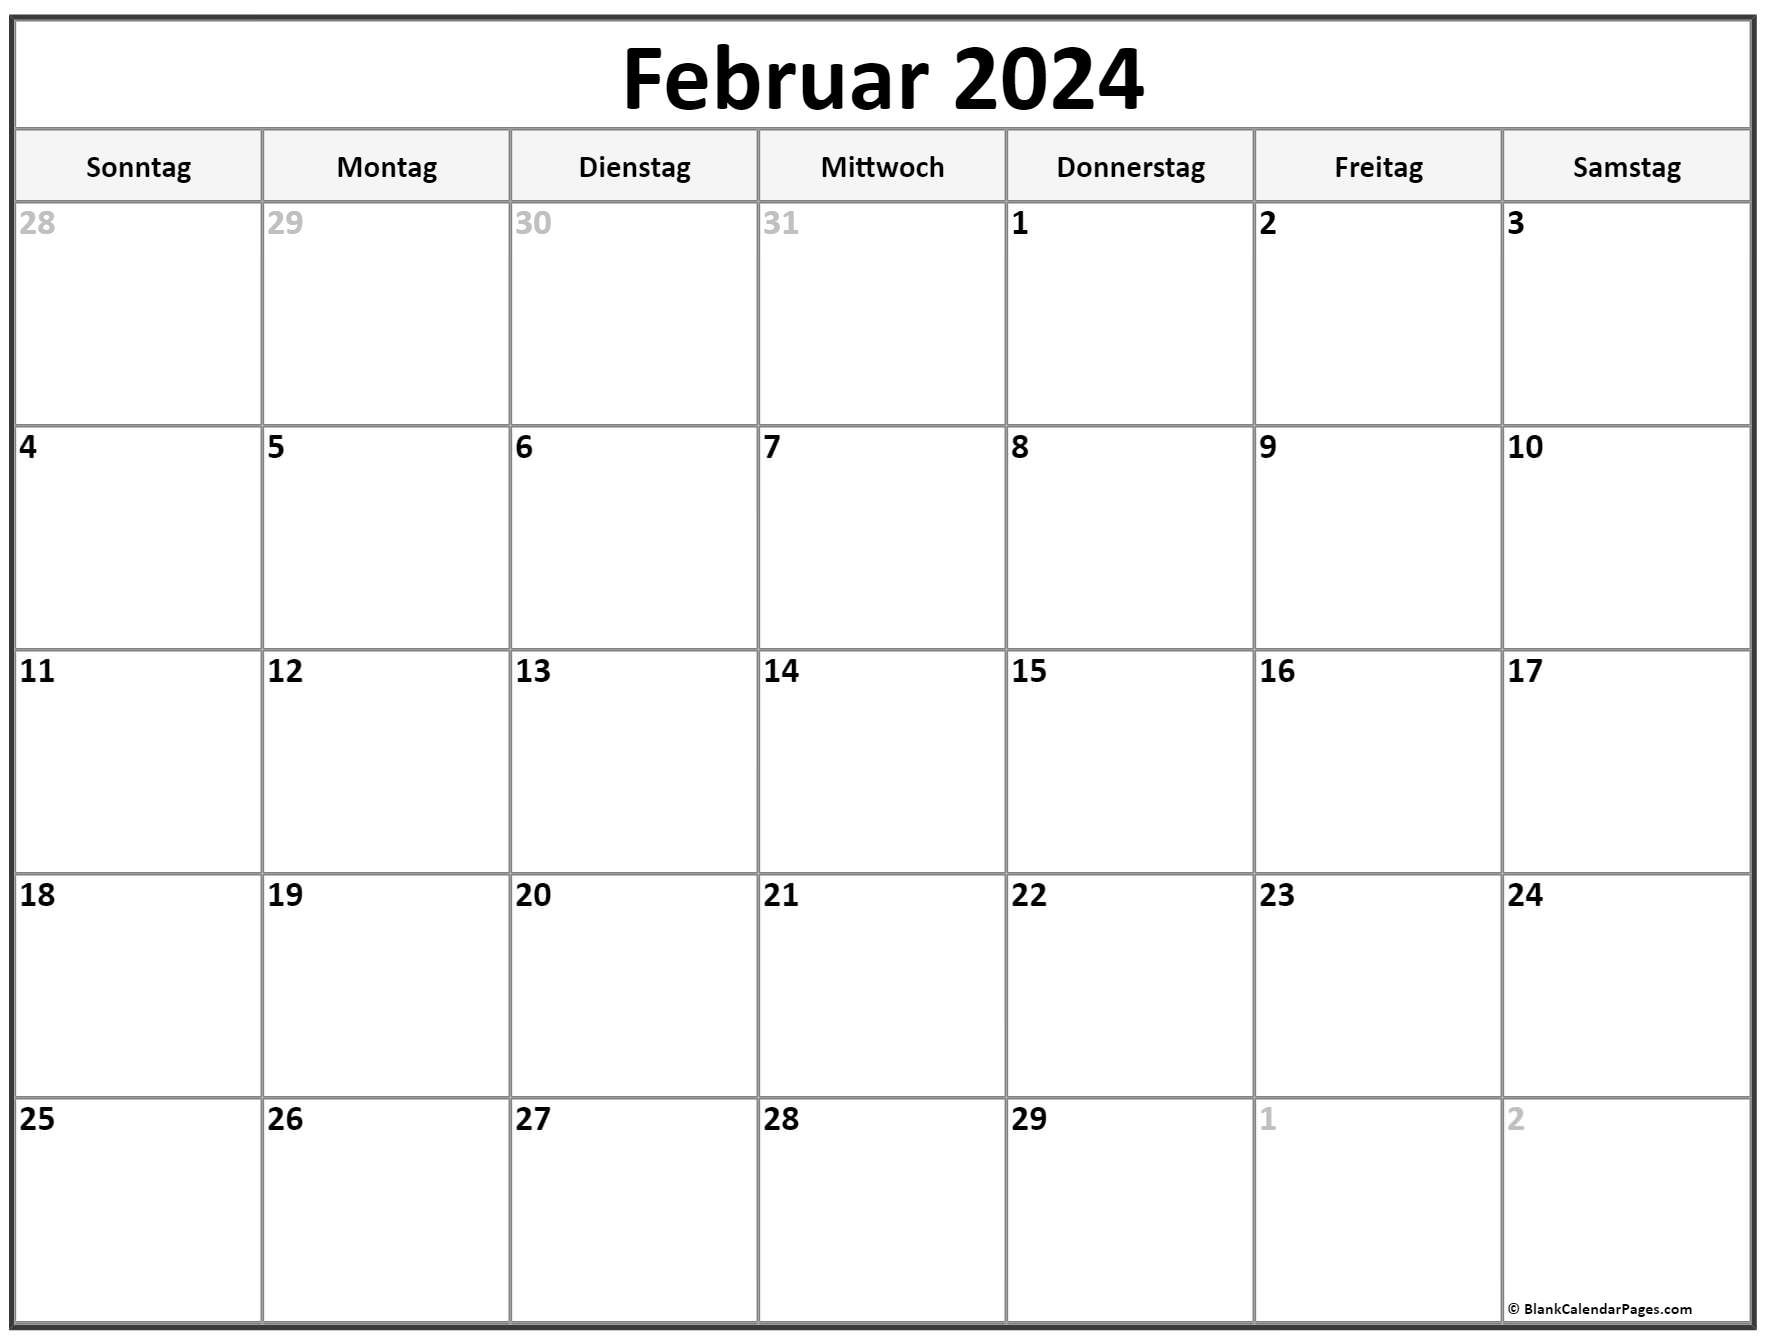 Februar 2024 kalender auf Deutsch kalender 2024